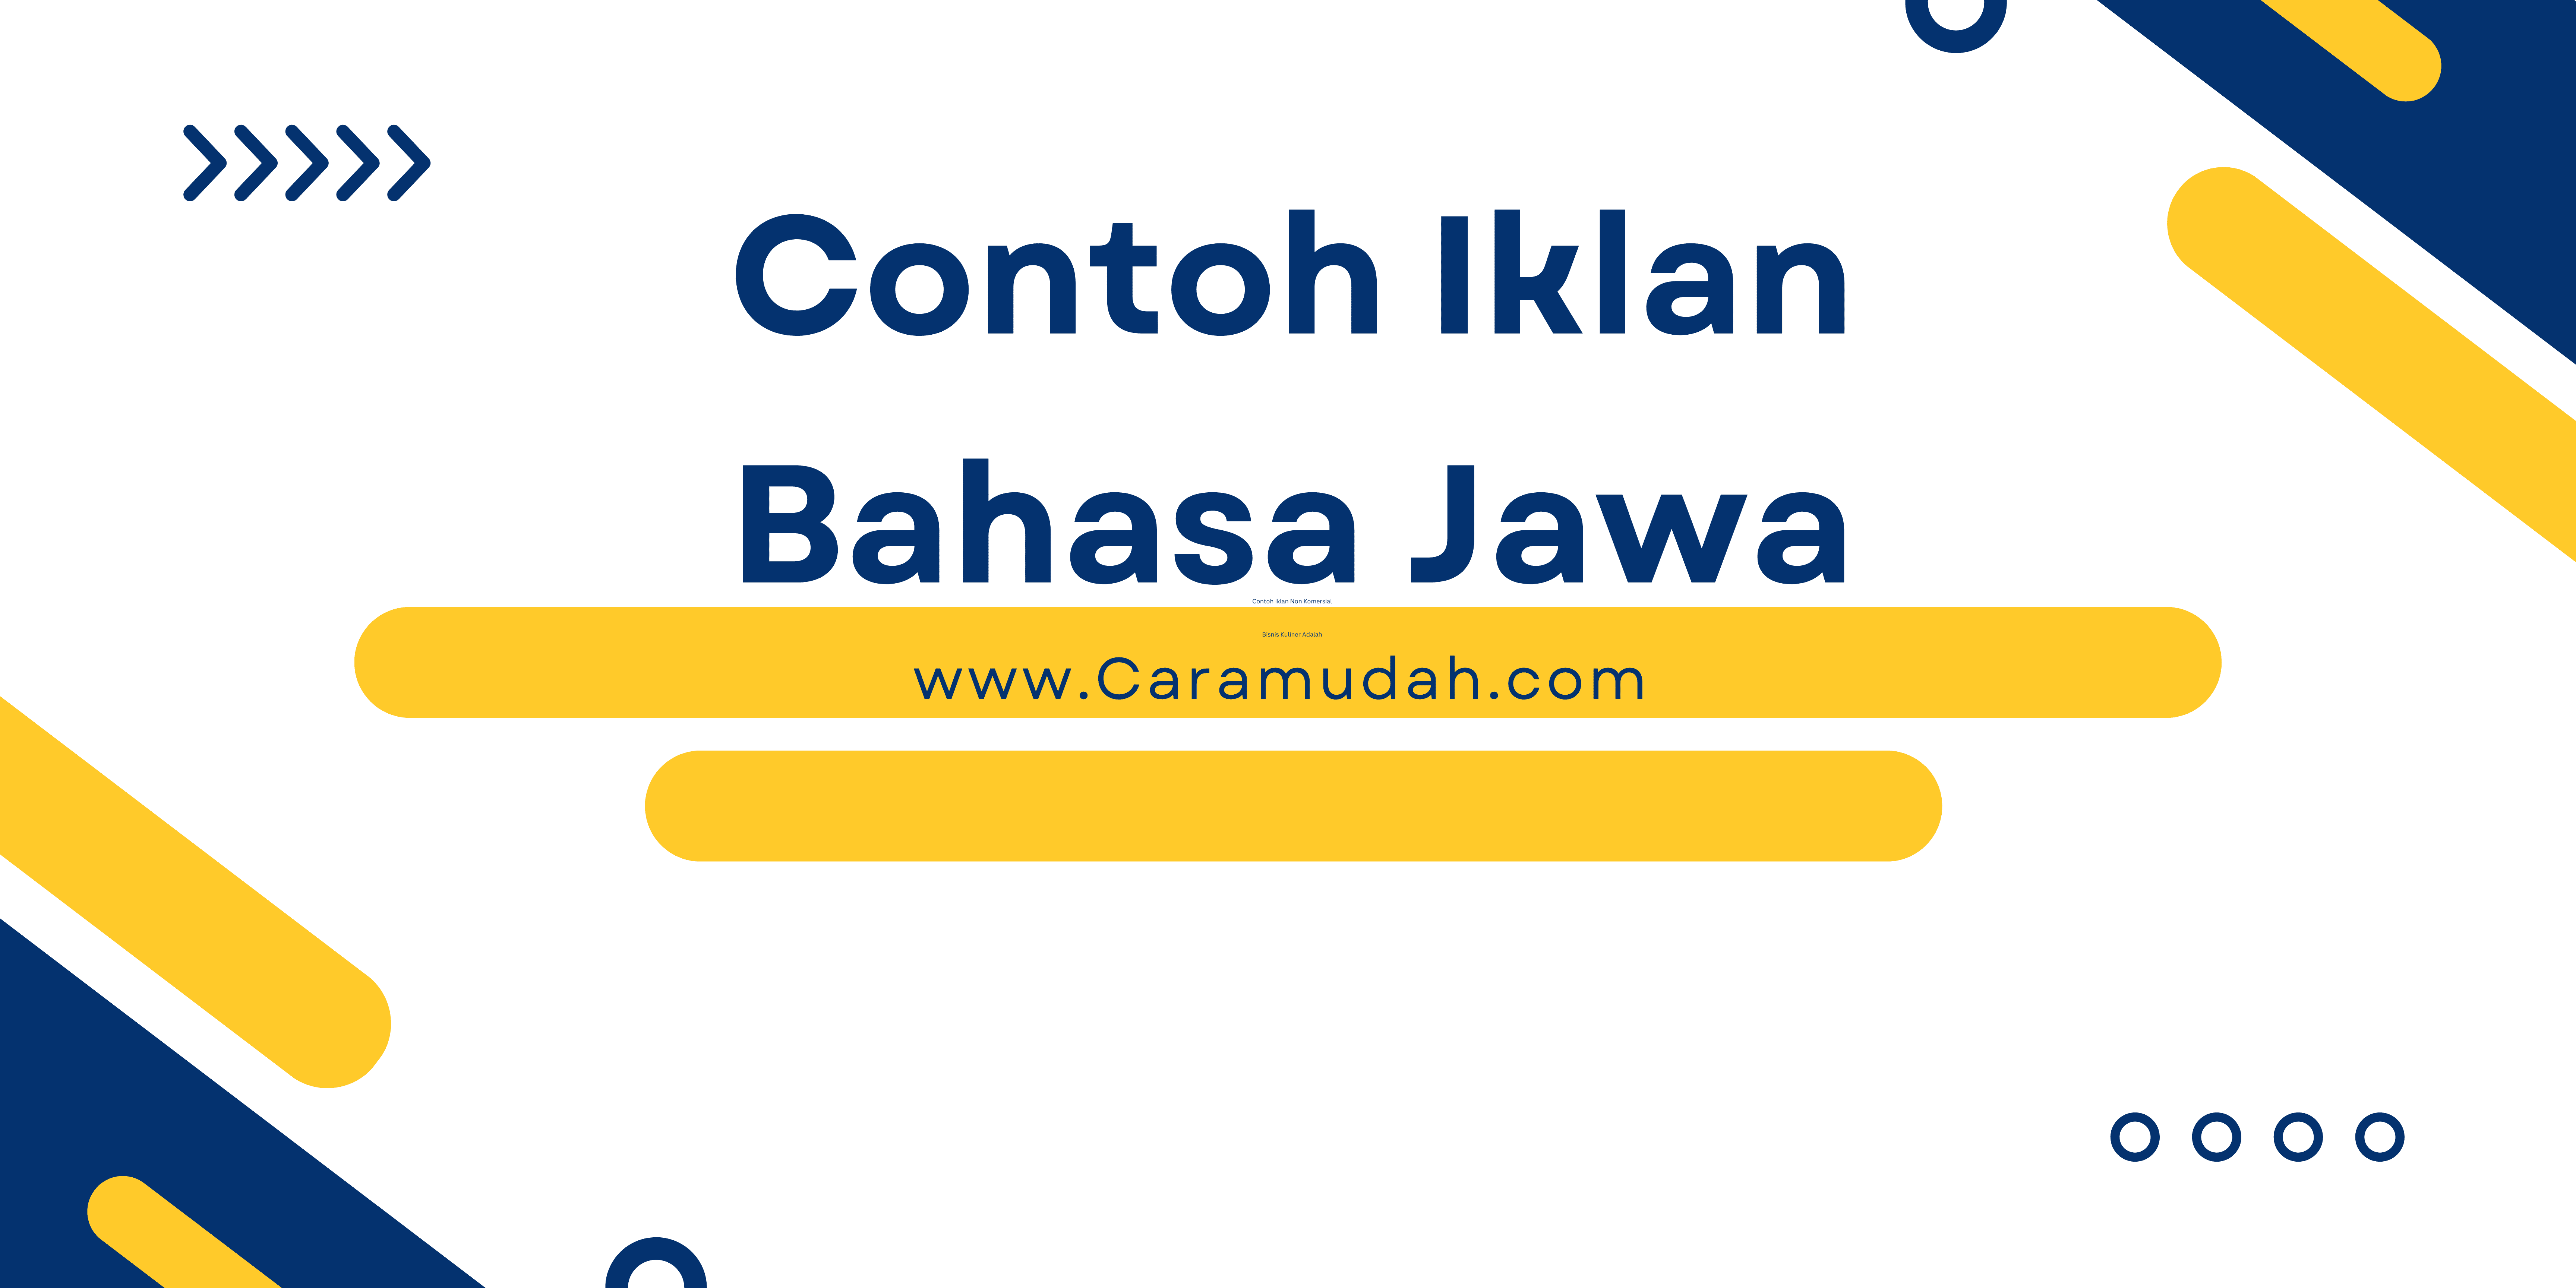 Contoh Iklan Bahasa Jawa